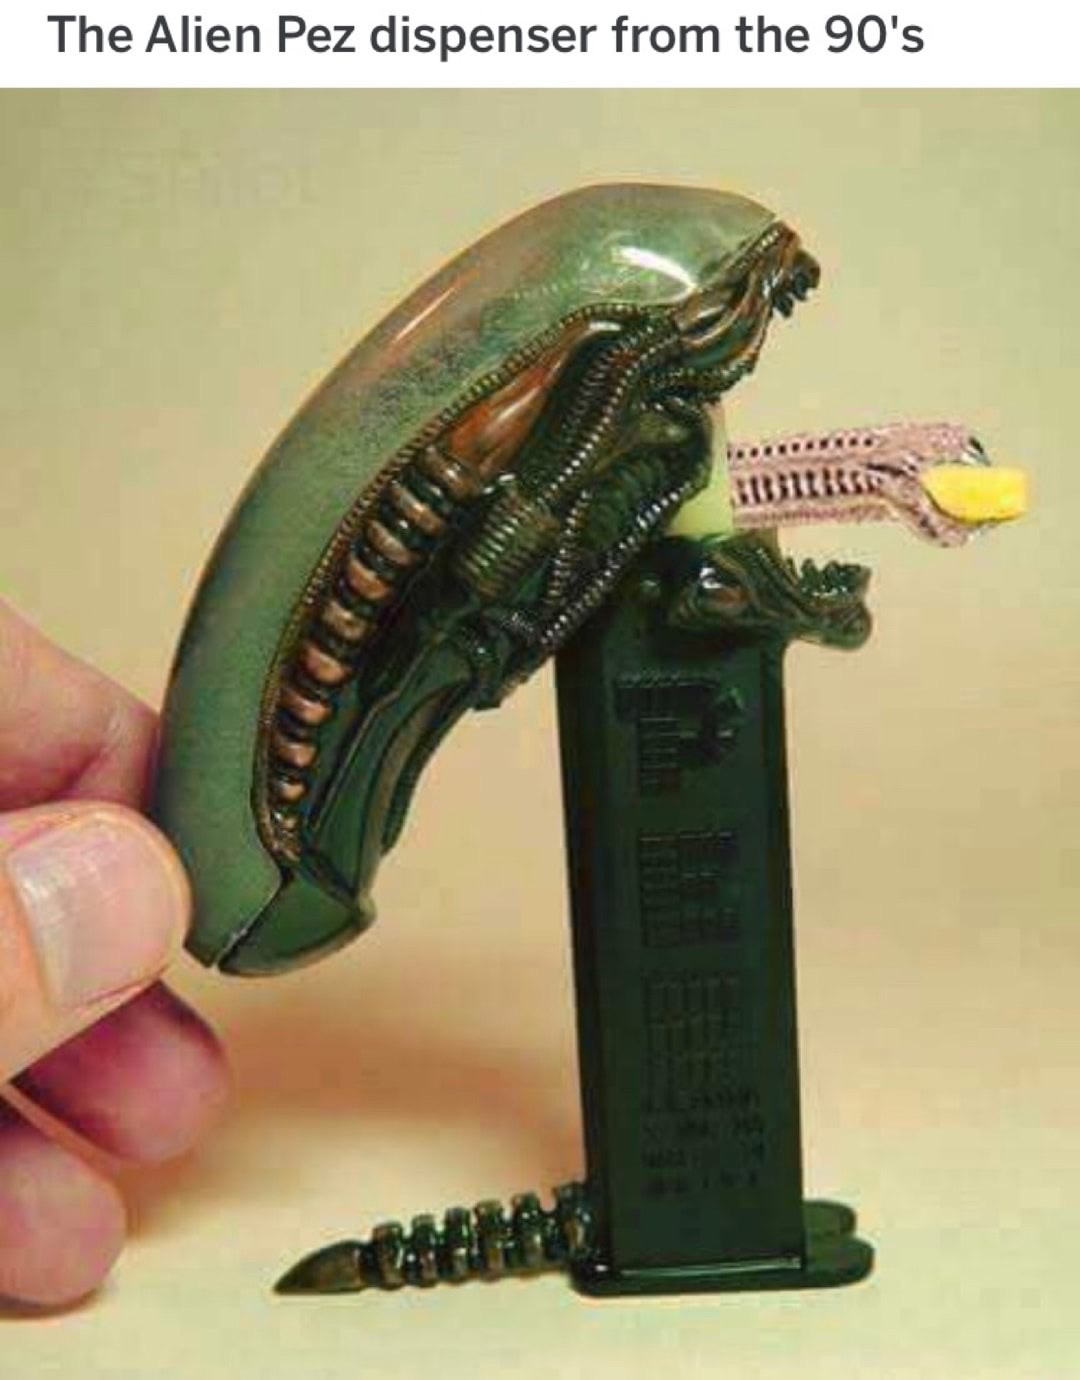 alien pez dispenser - The Alien Pez dispenser from the 90's 13